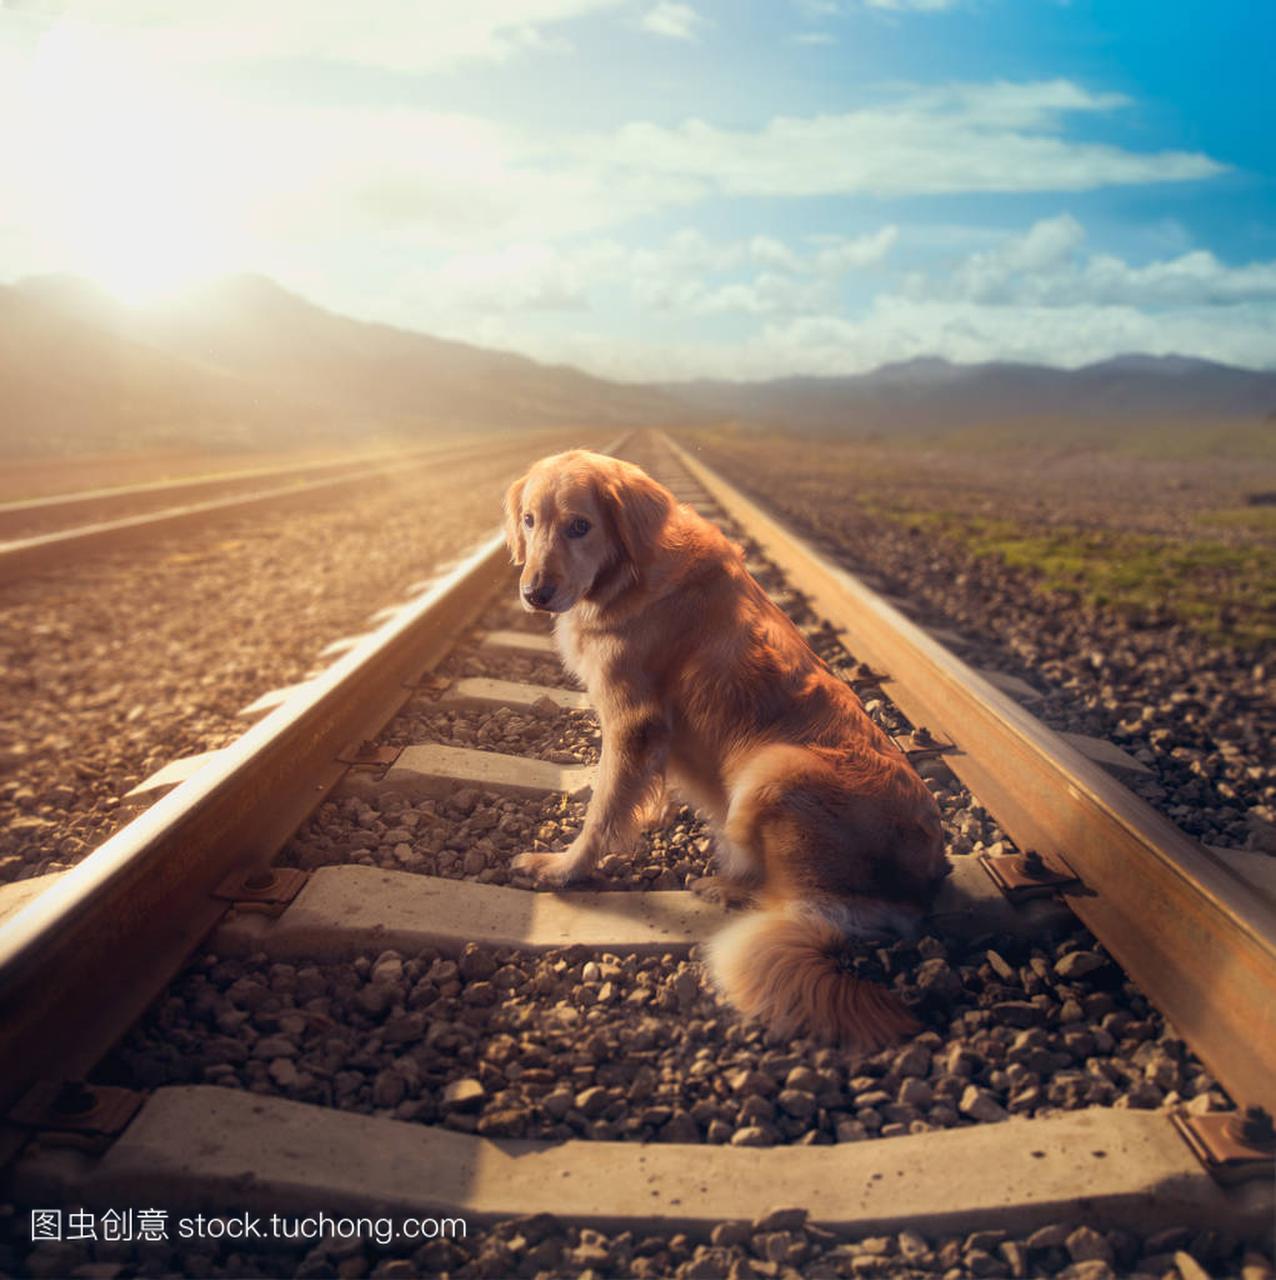 在铁轨中间的哀伤的狗, 高对比图片